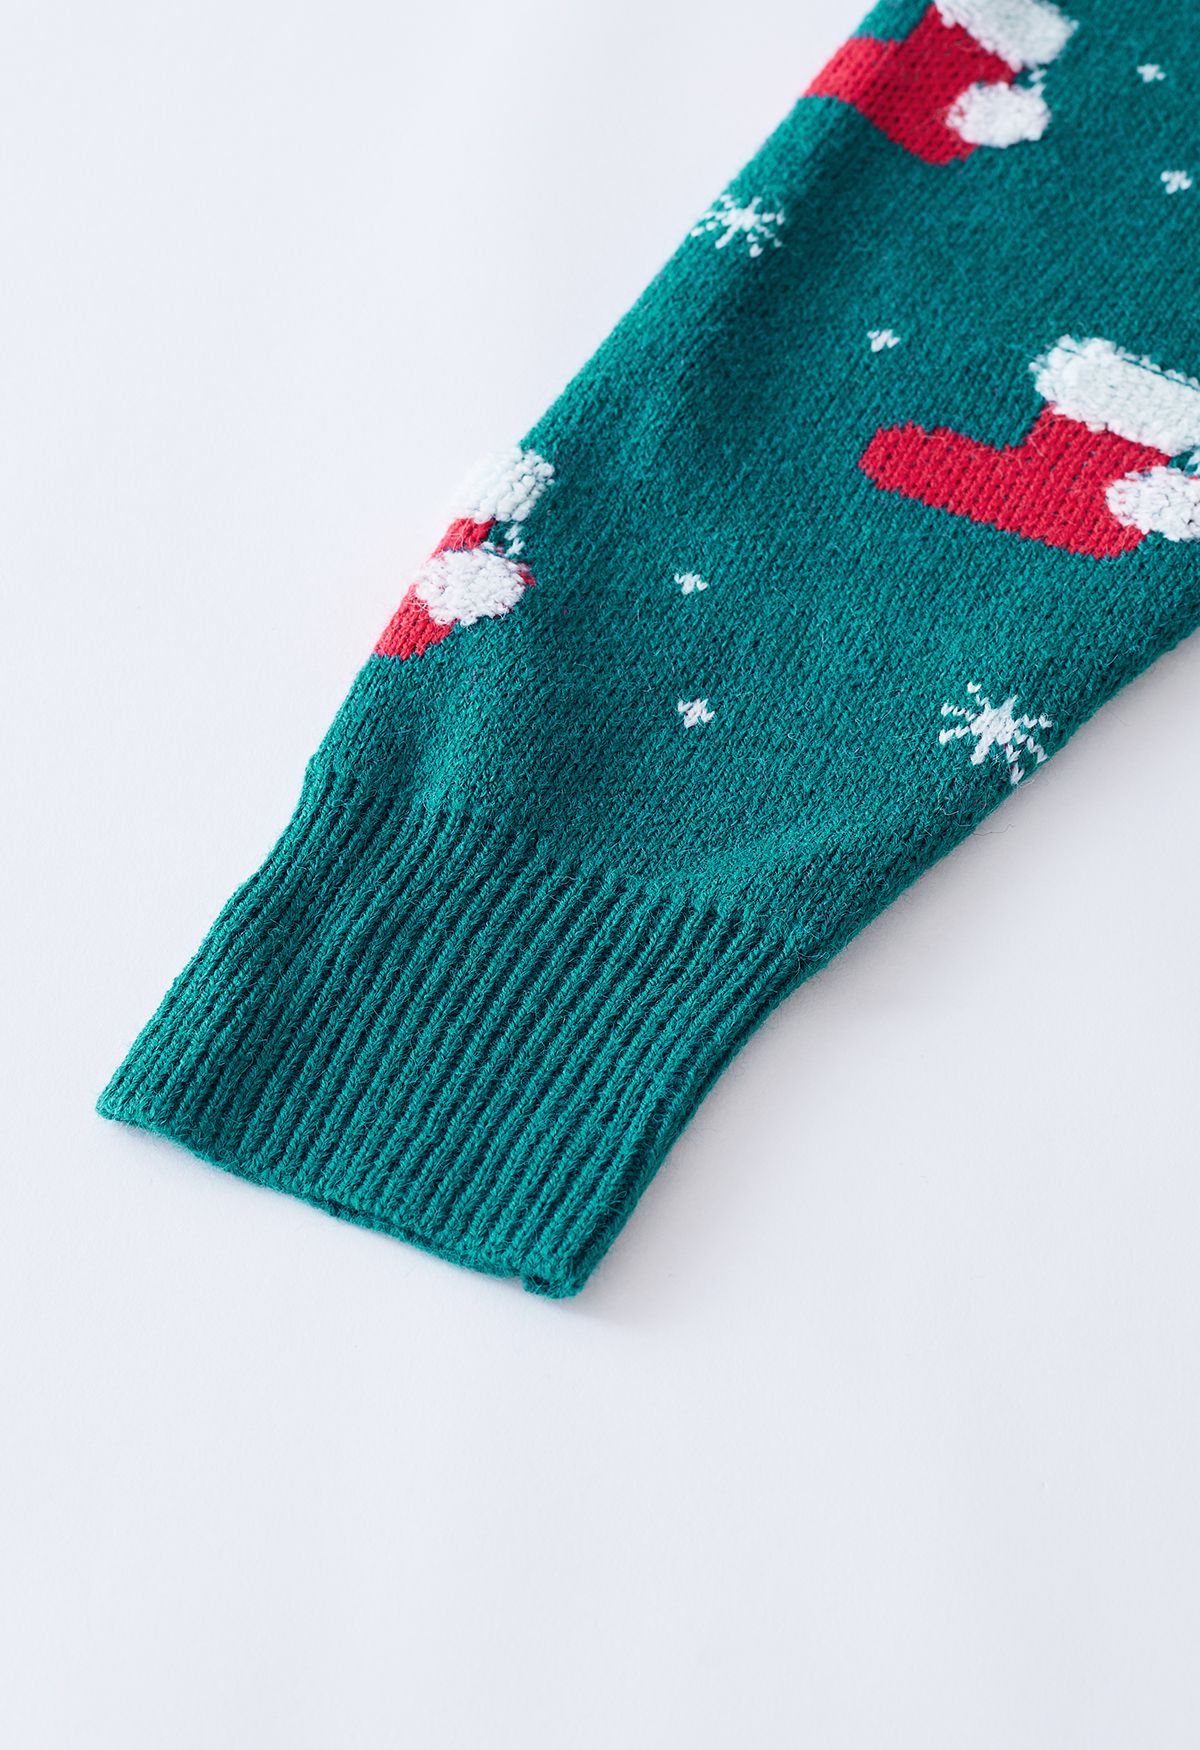 Chandail en tricot de flocon de neige avec bas de Noël